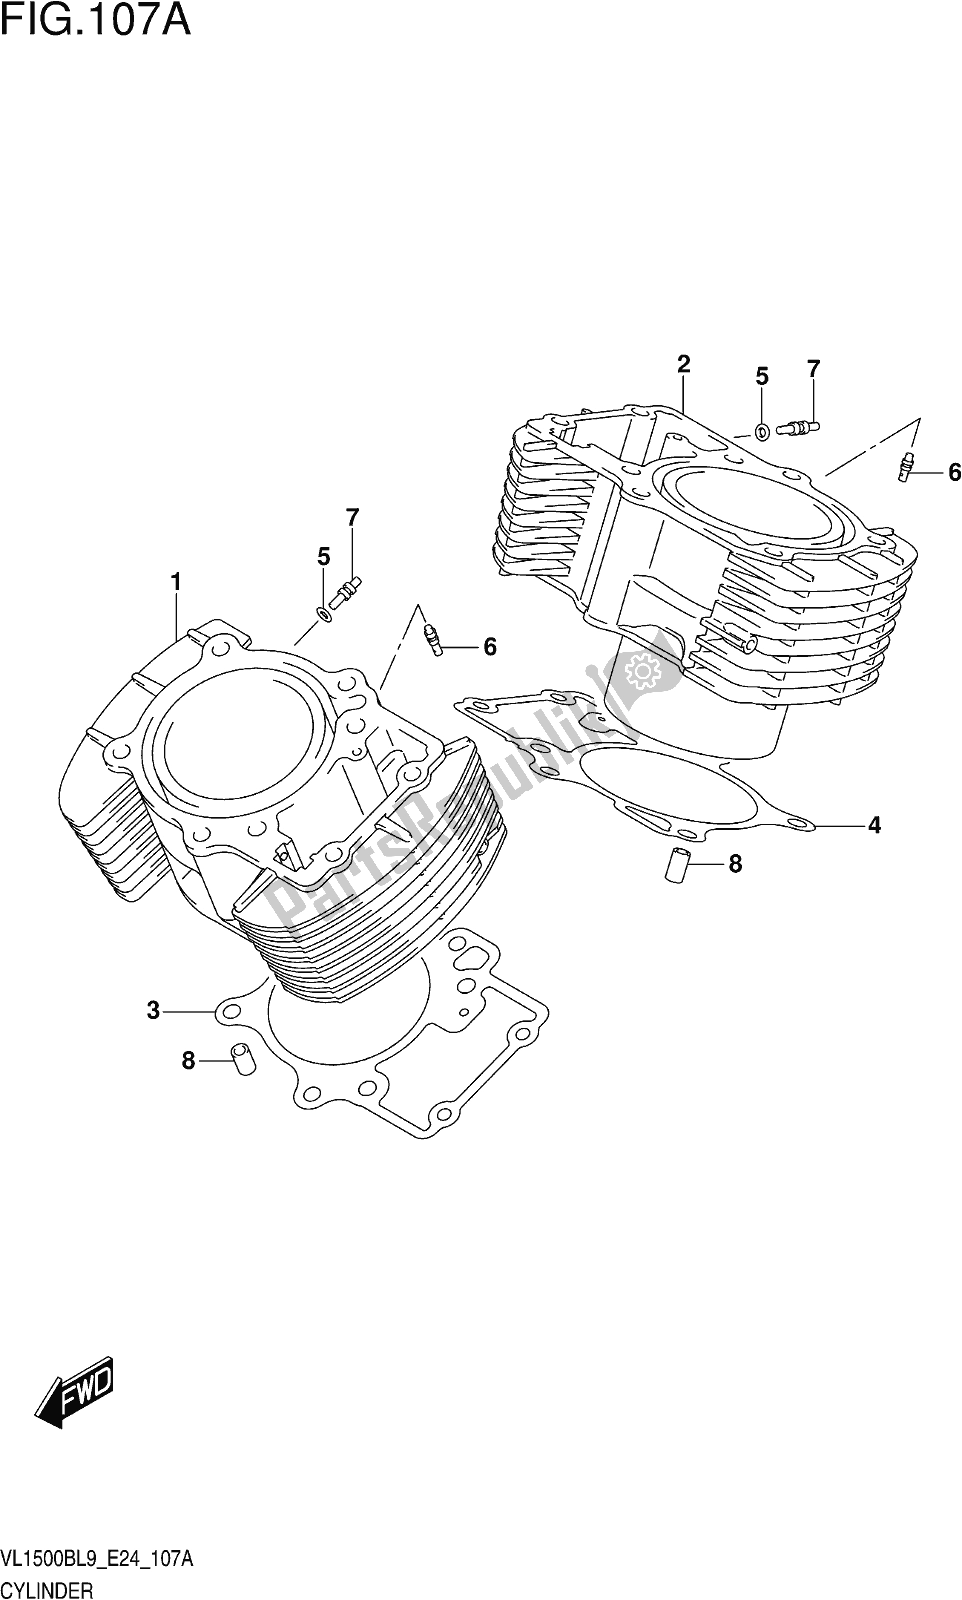 Alle onderdelen voor de Fig. 107a Cylinder van de Suzuki VL 1500B 2019